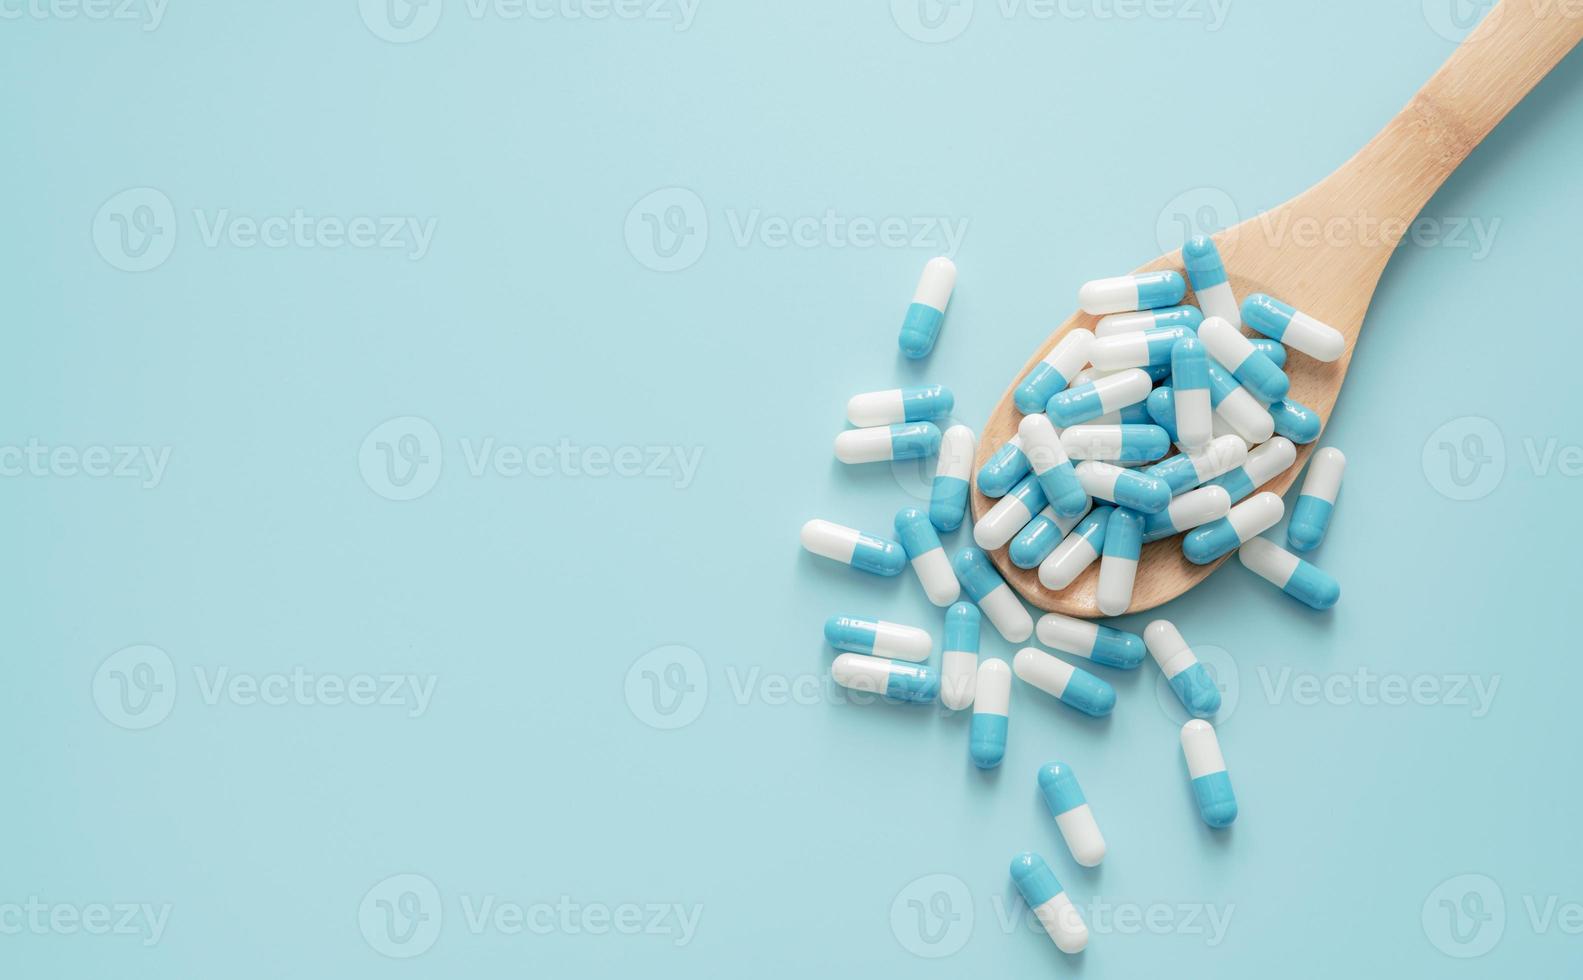 superiore Visualizza di blu bianco antibiotico capsula pillole su di legno cucchiaio e blu sfondo. antibiotico droga resistenza. prescrizione droga. medico cura. farmaceutico cura. antimicrobico droga uso eccessivo. foto